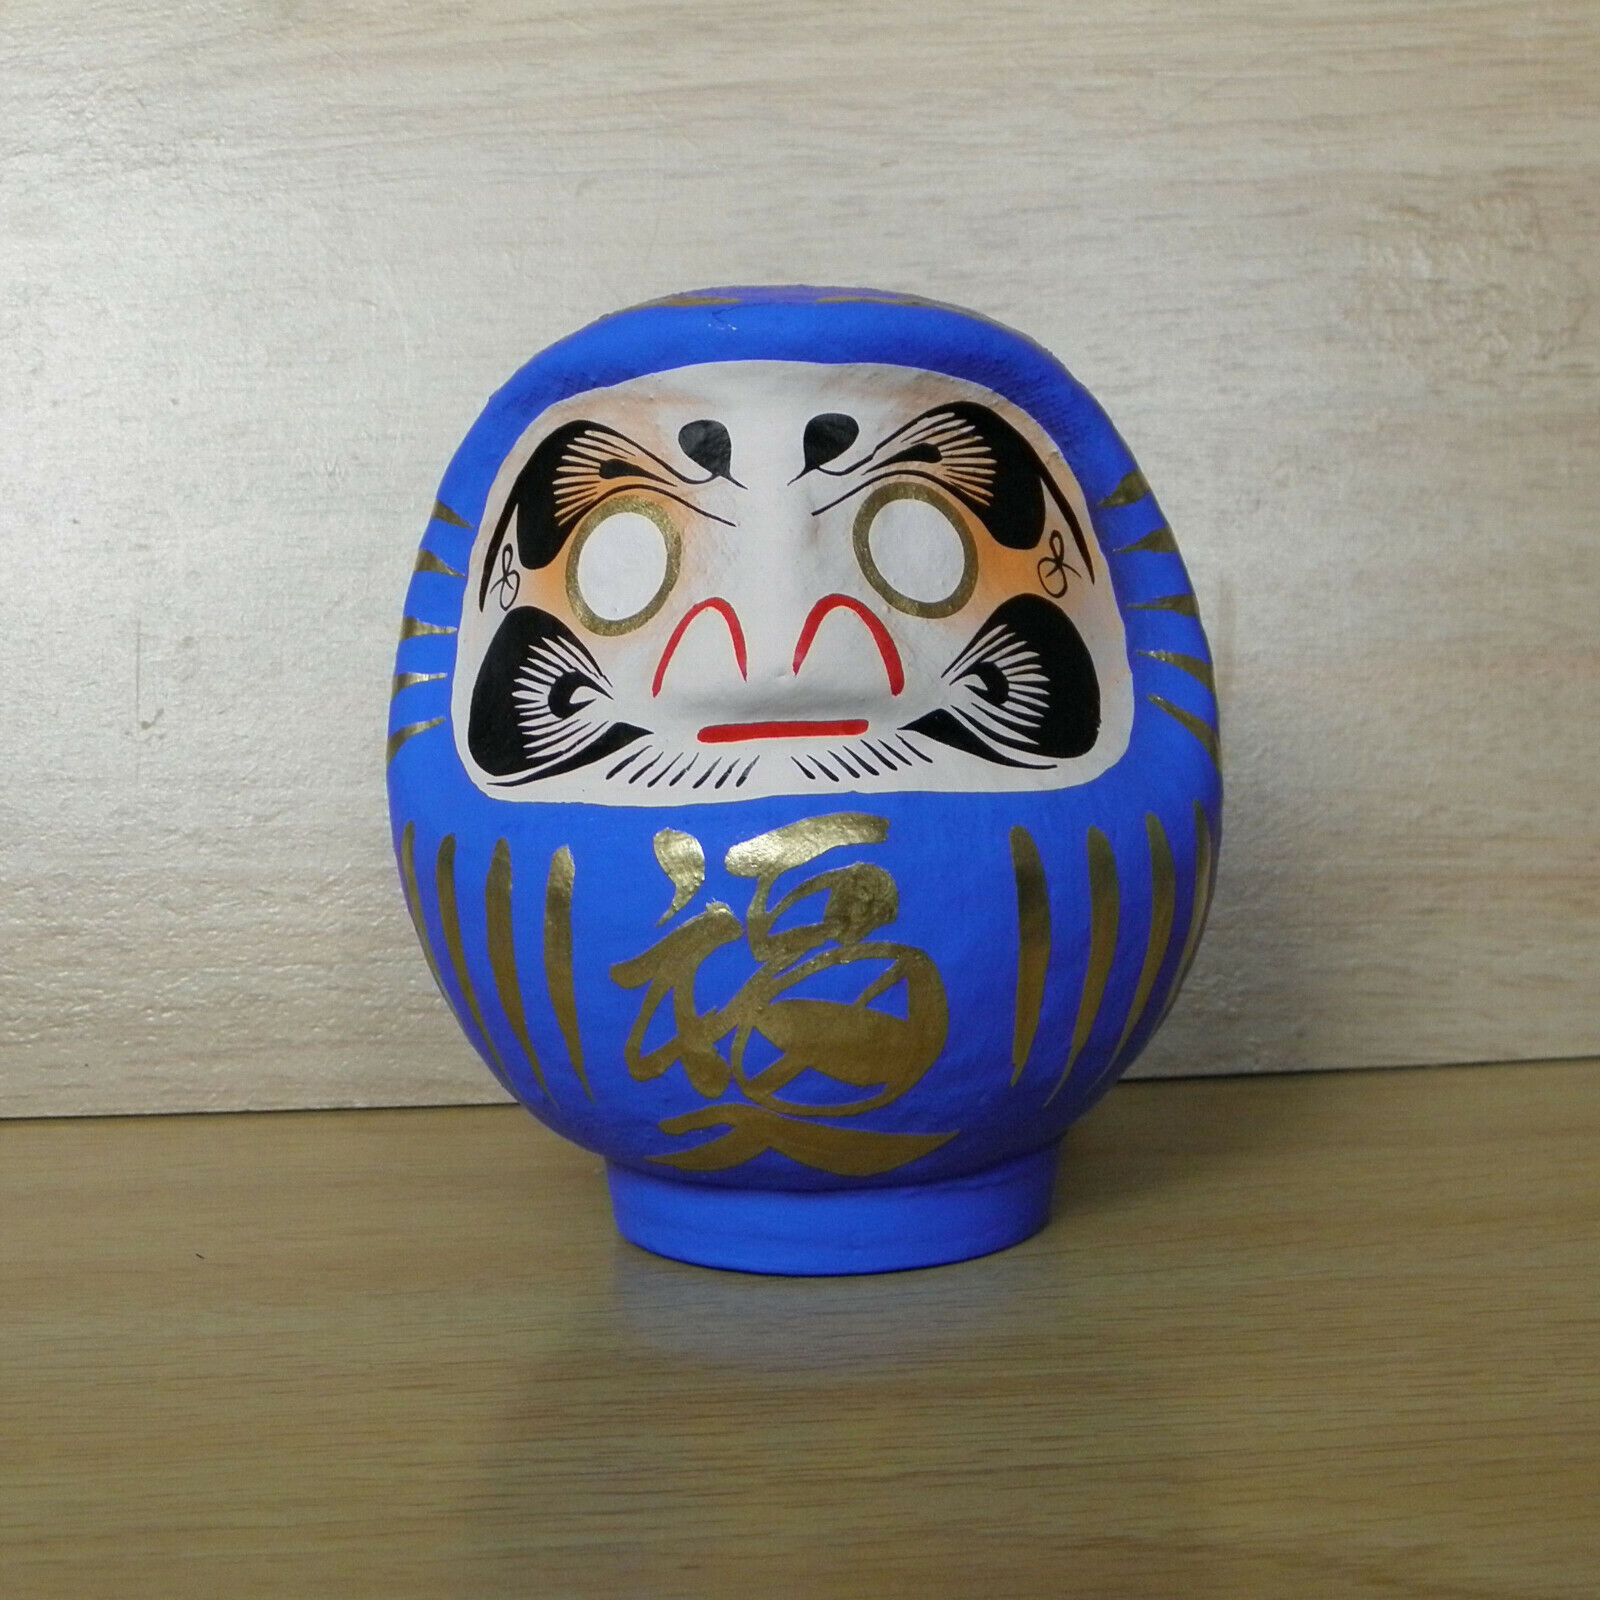 small Daruma Doll in blue color with a pen / Daruma at Takasaki : No 1 size